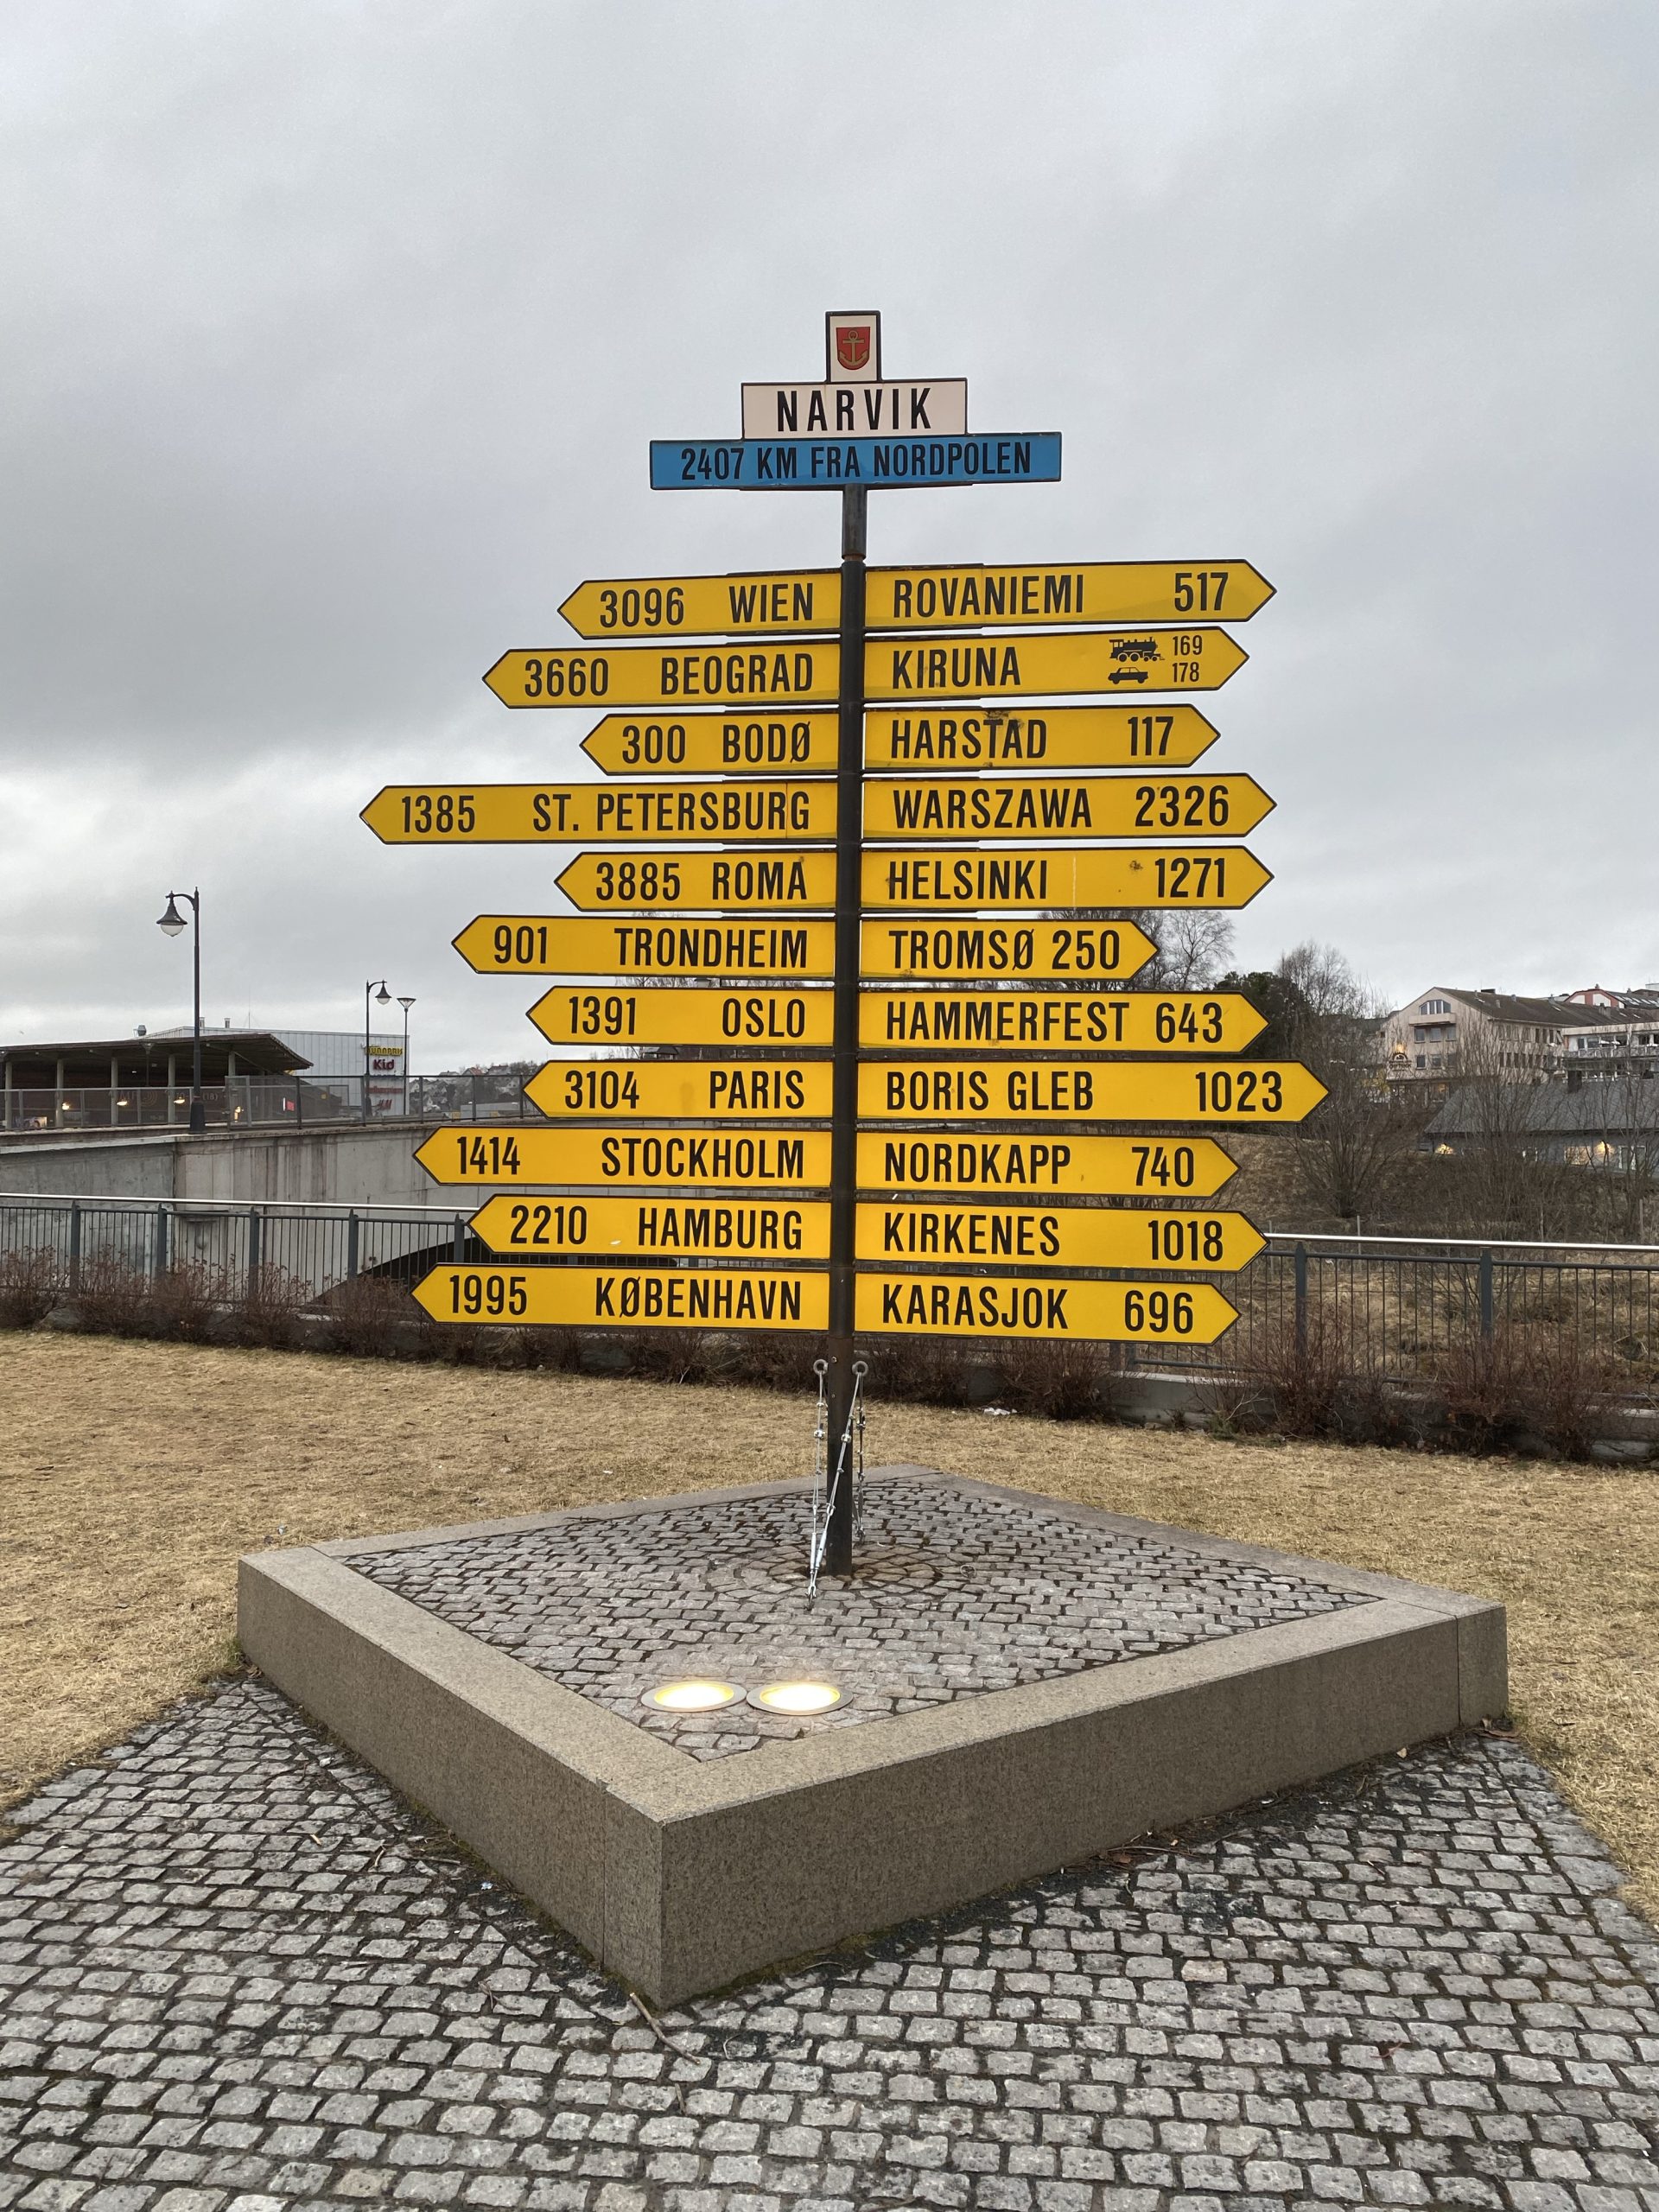 Signpost in Narvik